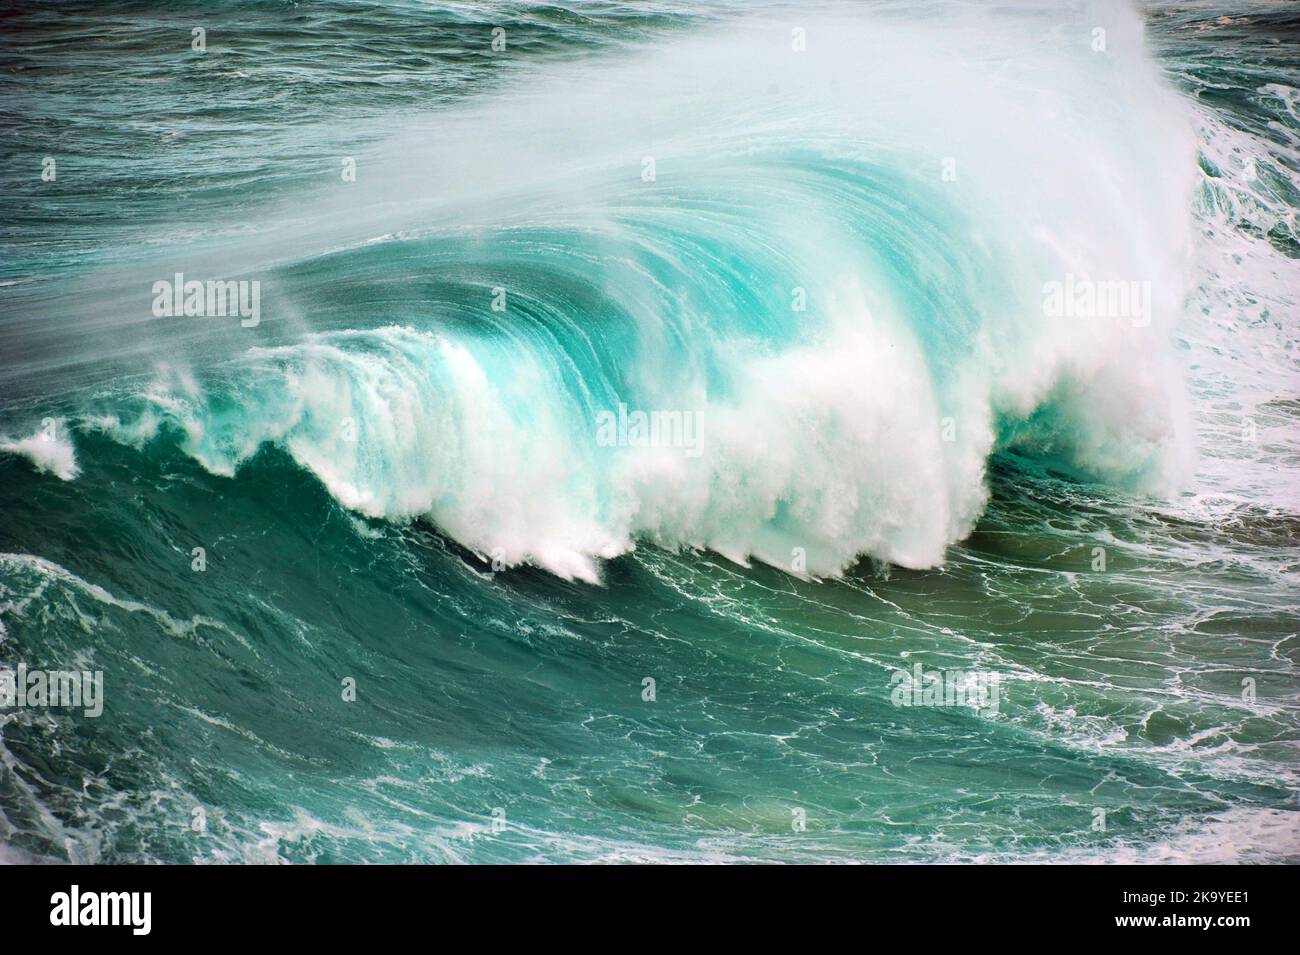 Atlantic Ocean, Portugal Stock Photo